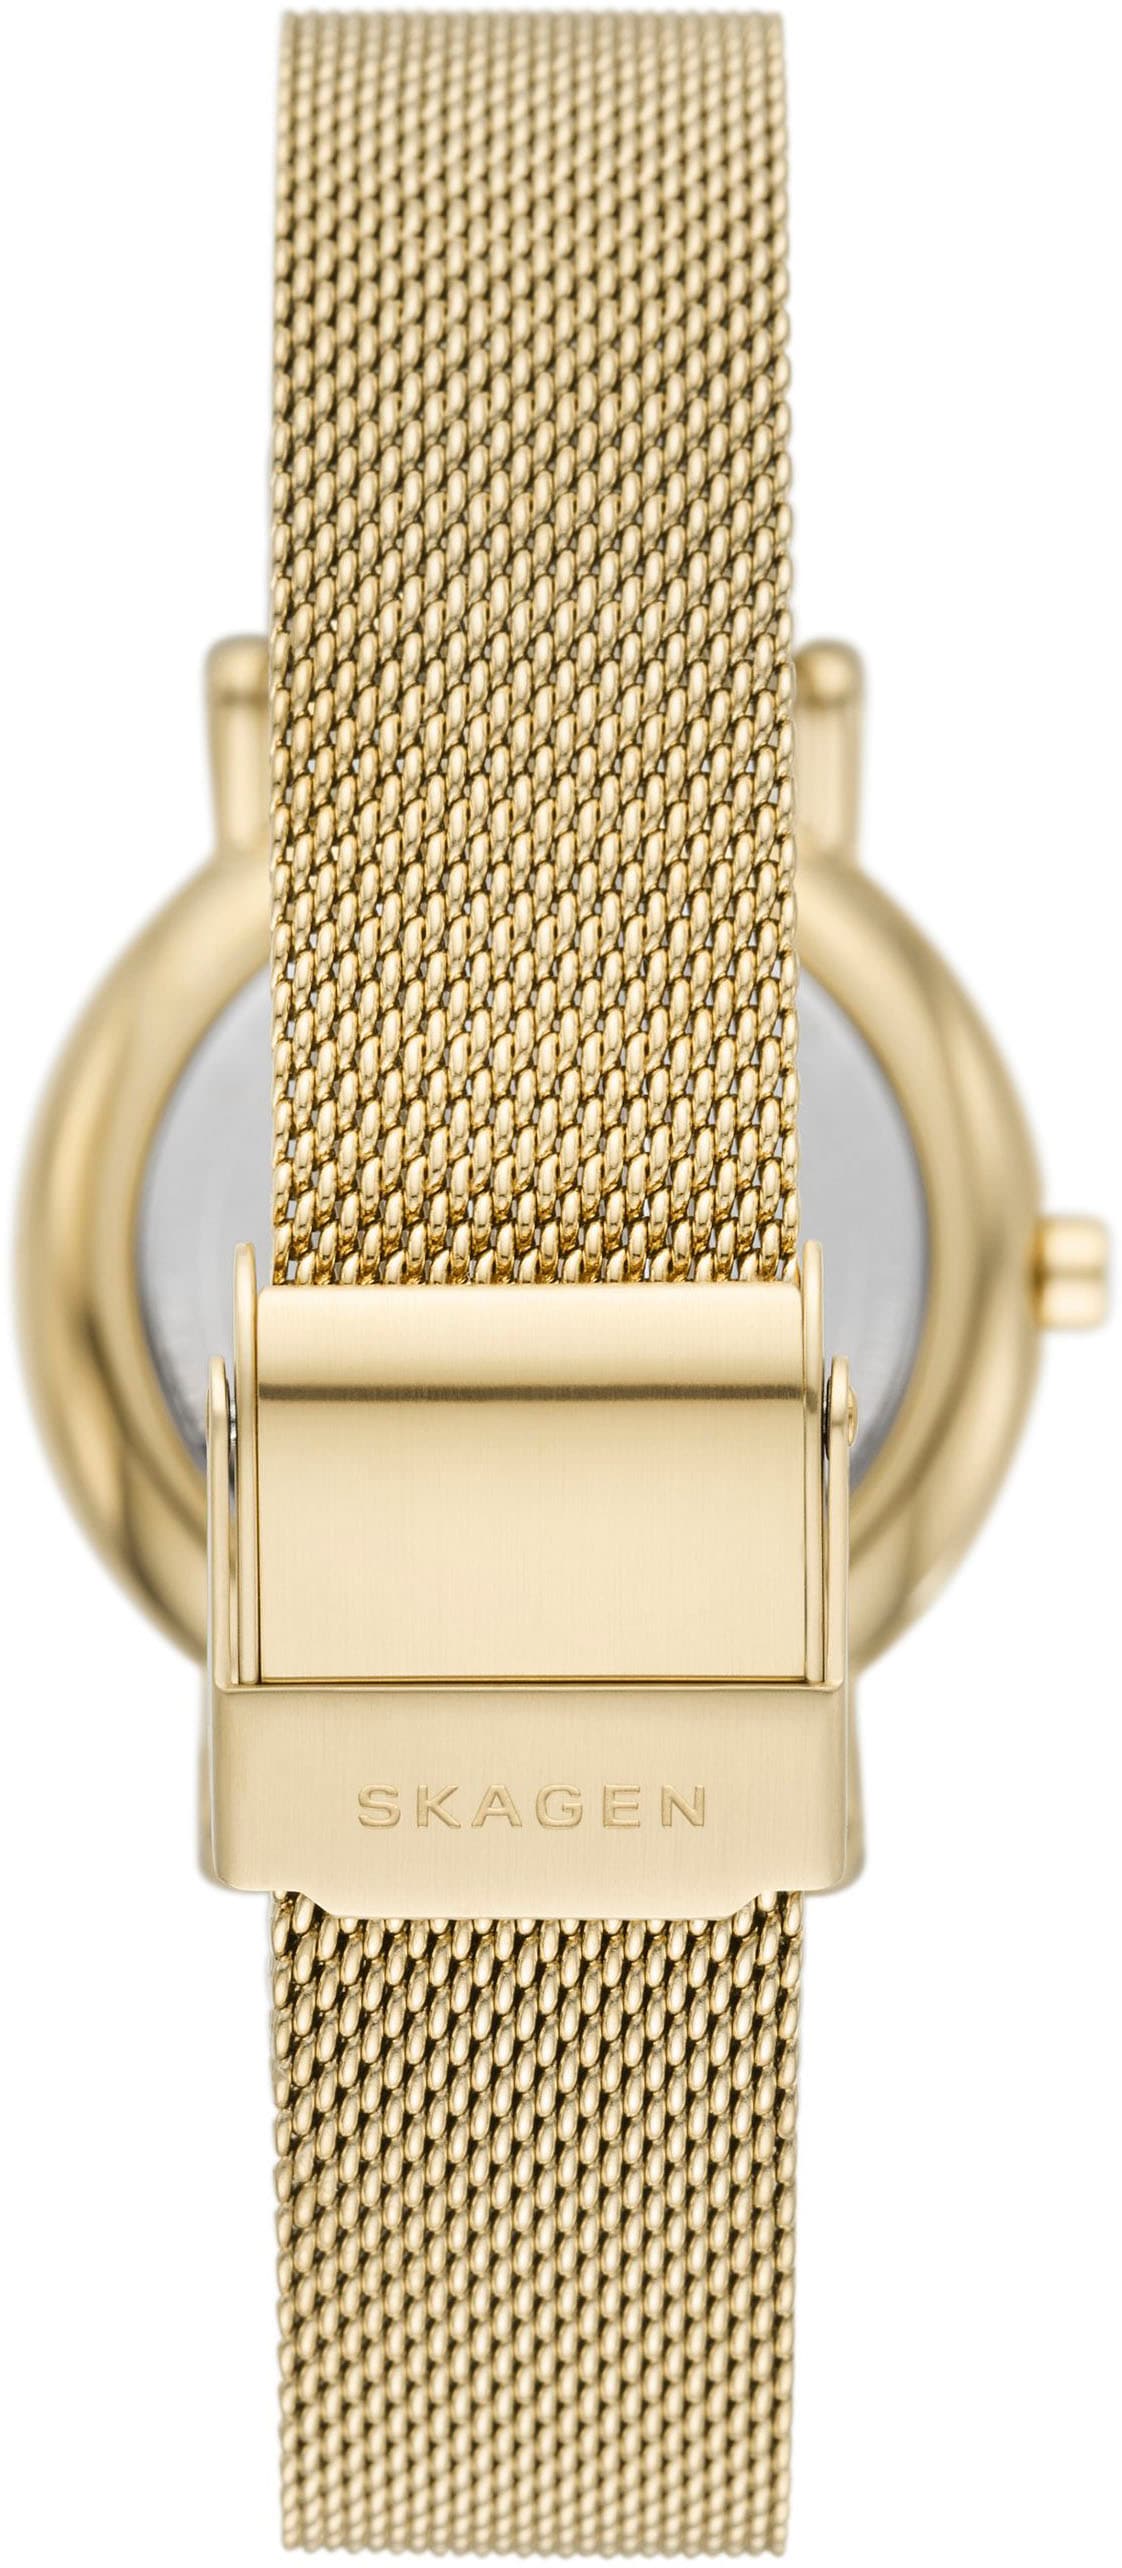 Skagen Quarzuhr »SIGNATUR LILLE, SKW3117«, Armbanduhr, Damenuhr, analog